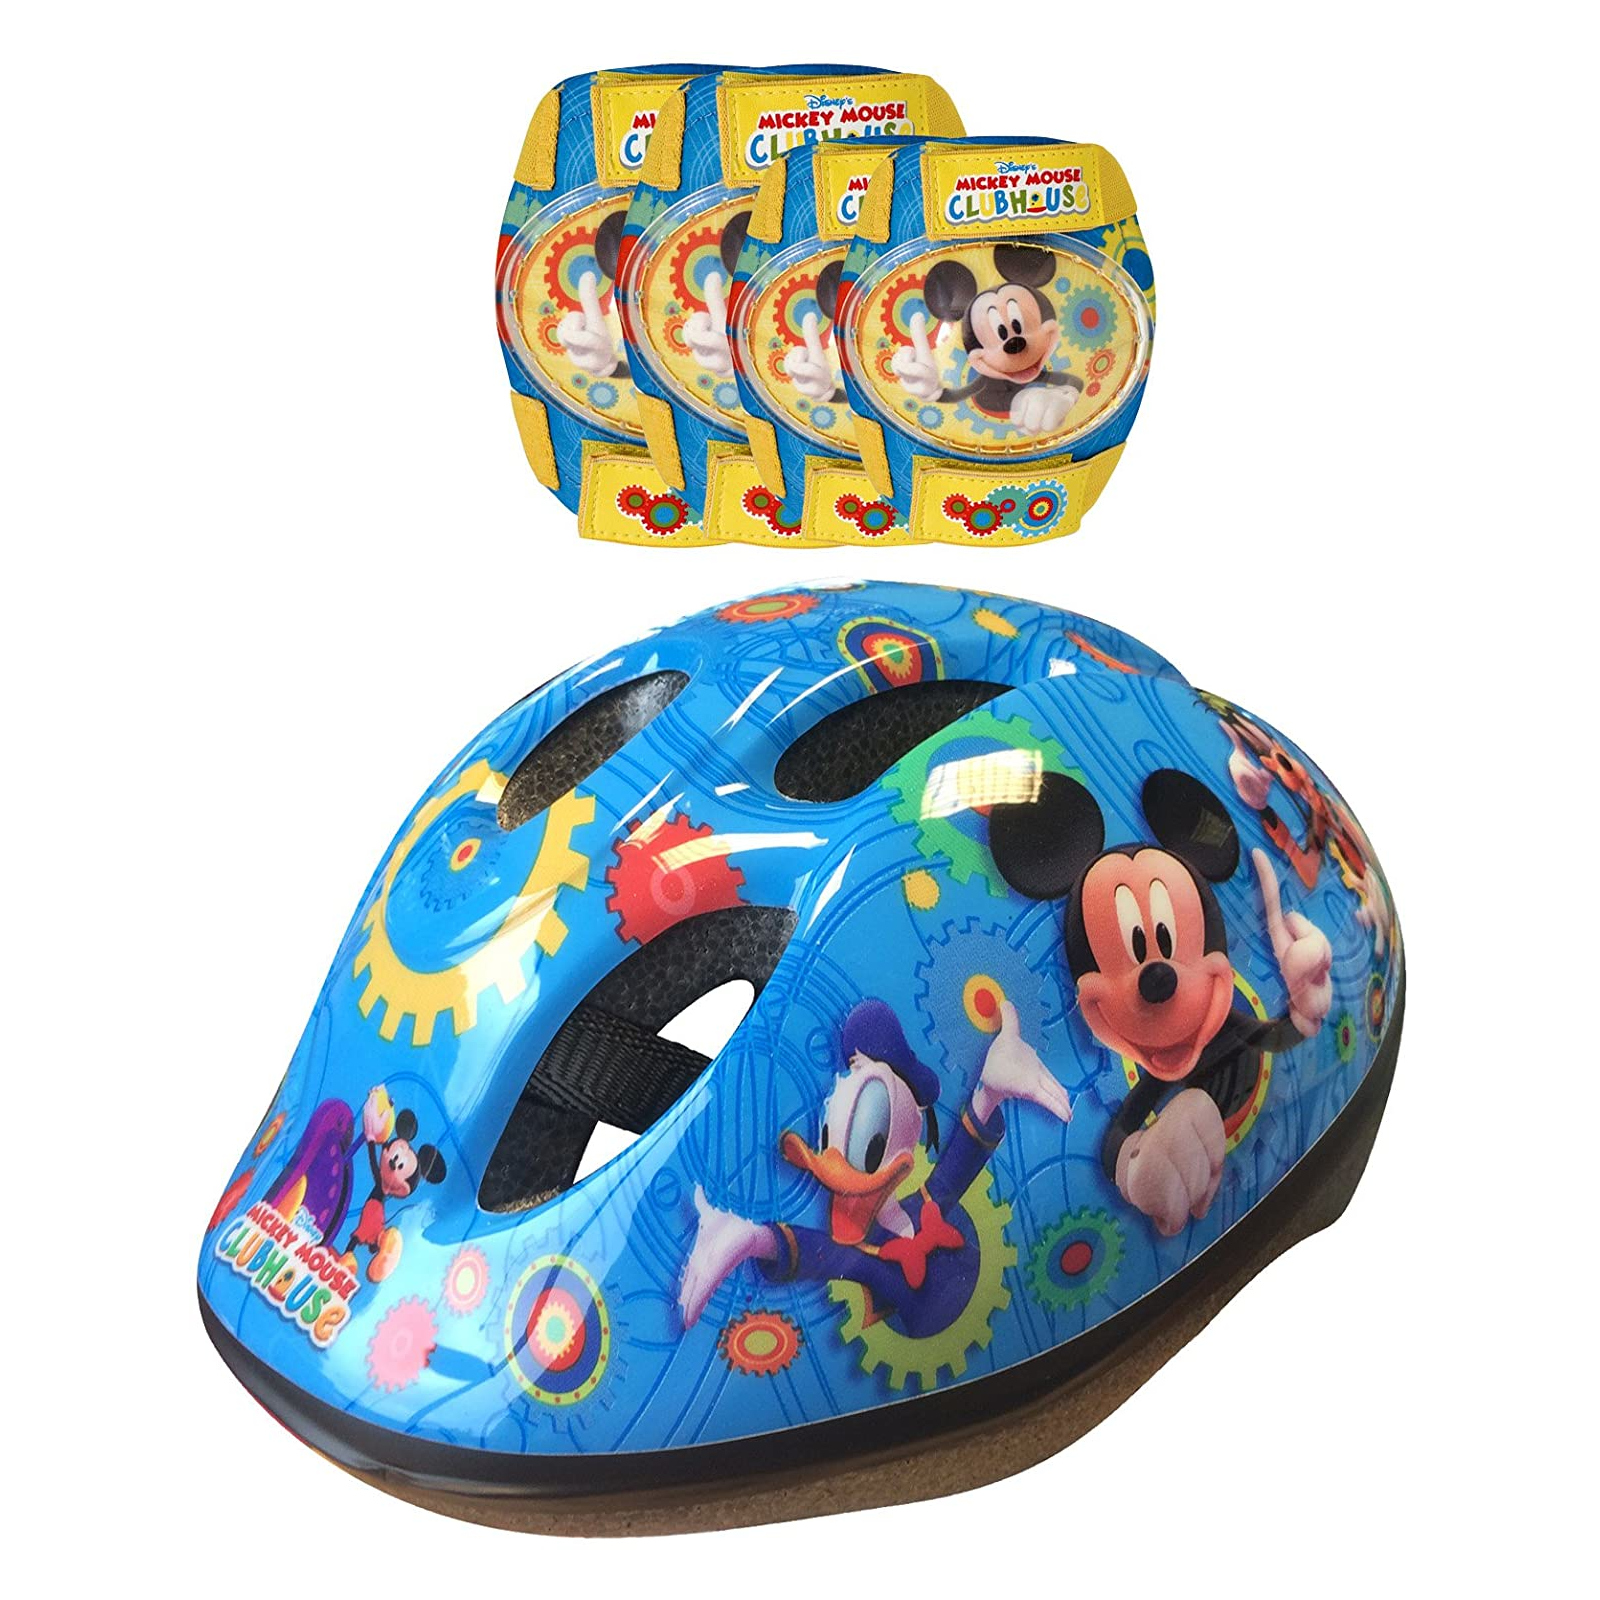 Capacete E Proteções Criança Mickey Mouse Tam. 53-56 Cm - azul - 